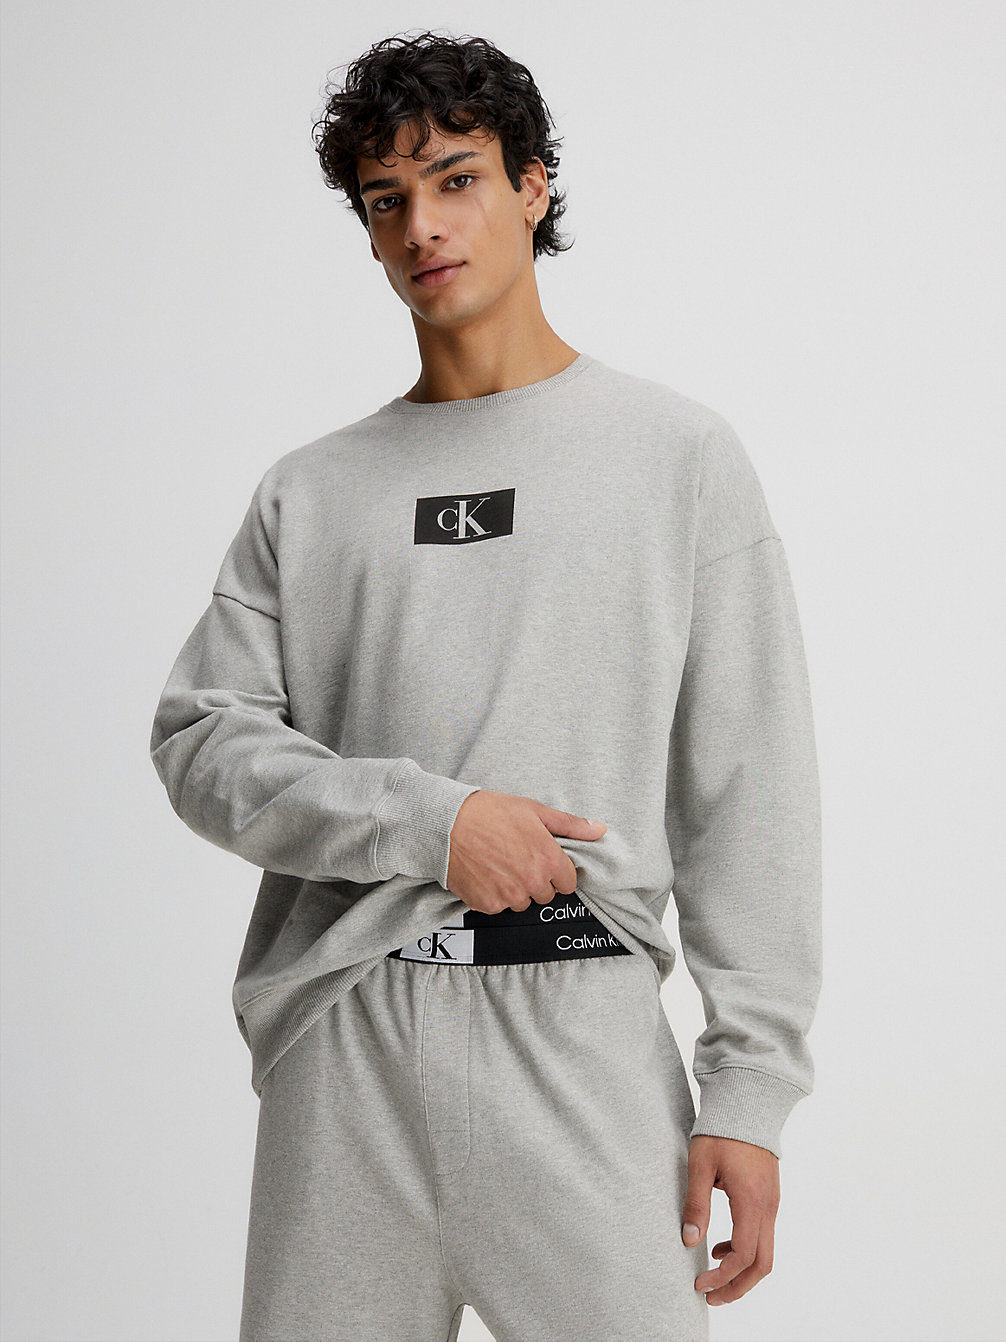 GREY HEATHER > Lounge Sweatshirt - Ck96 > undefined женщины - Calvin Klein